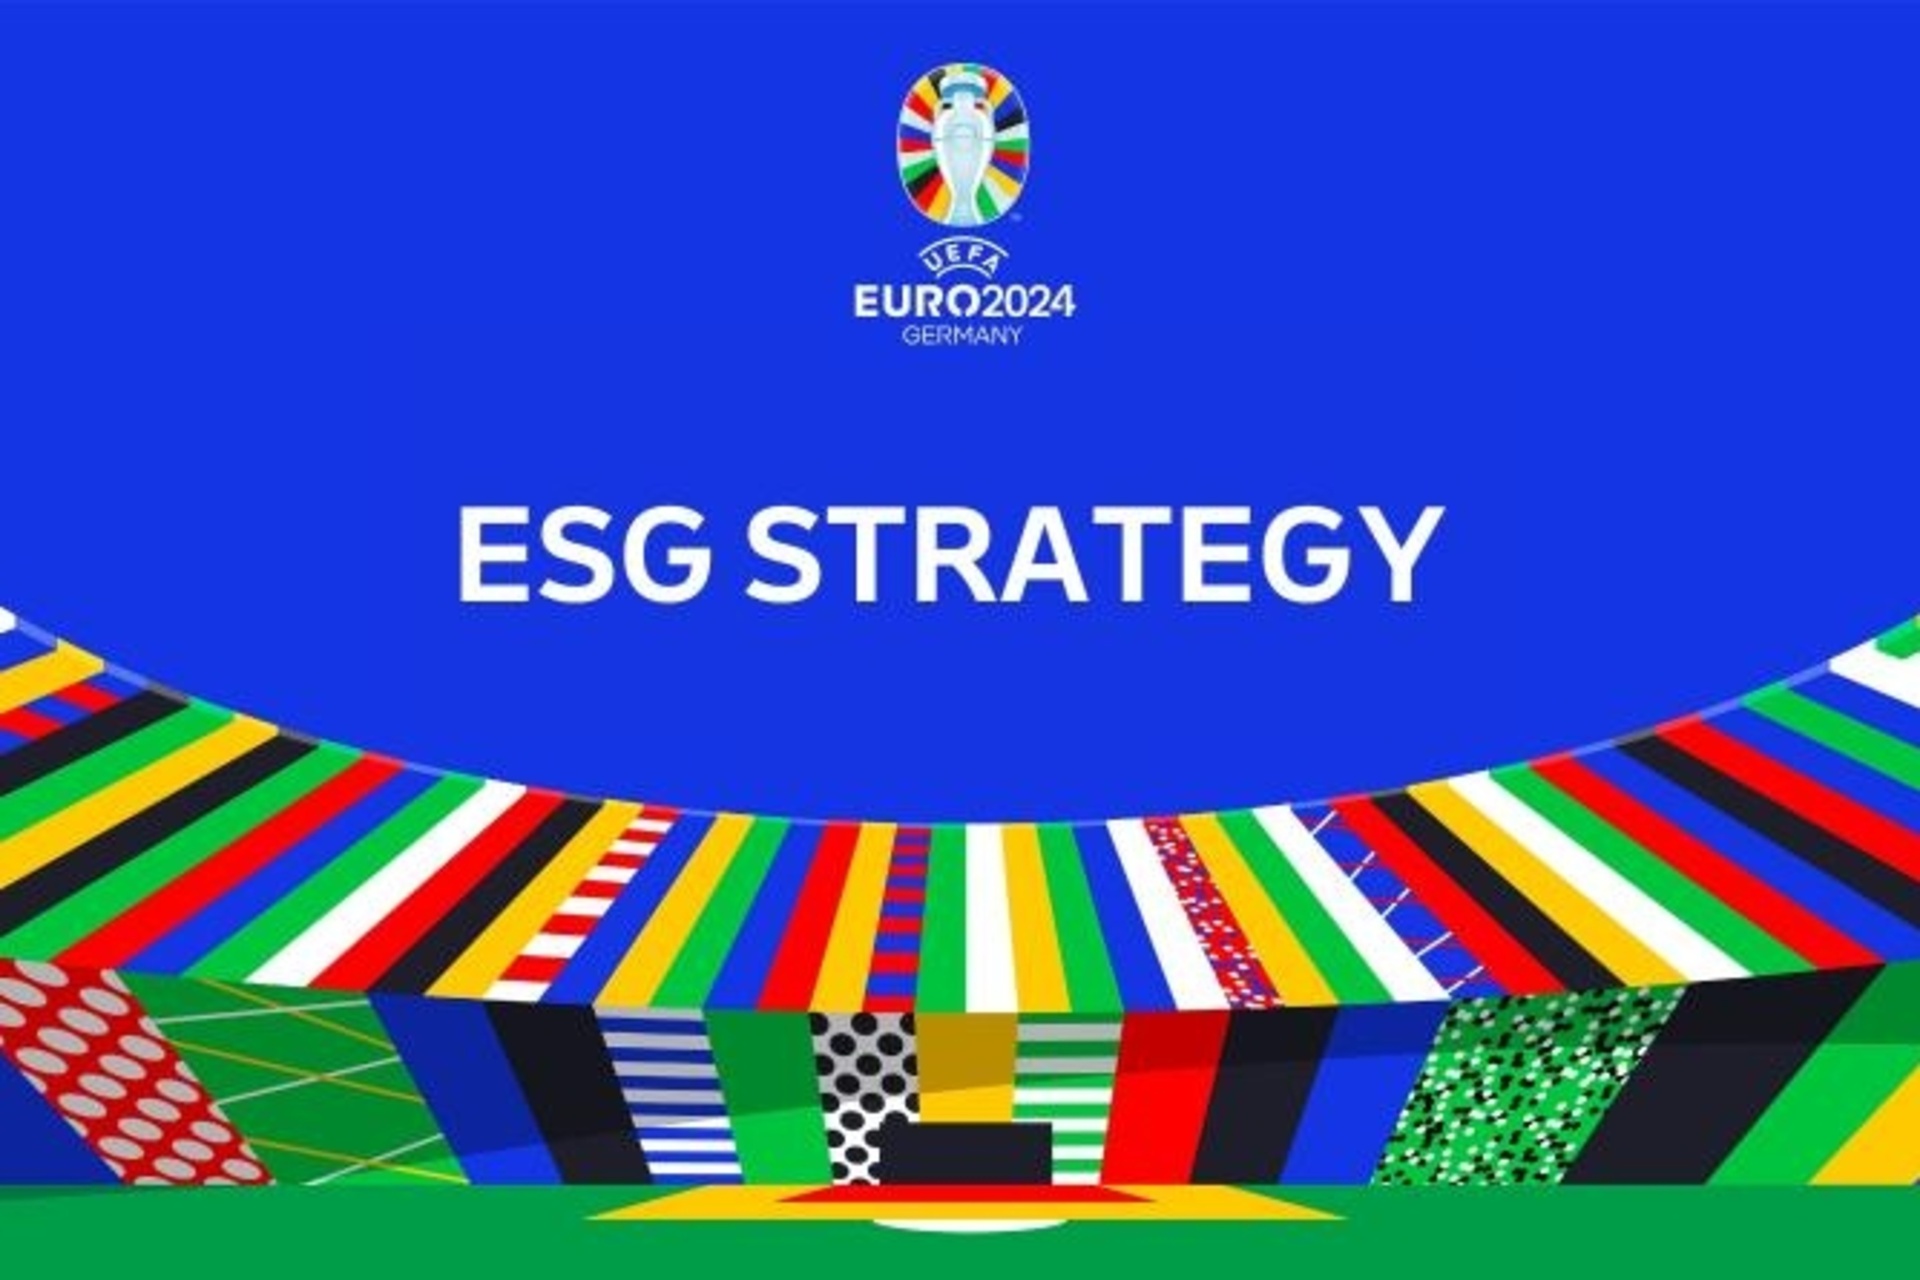 Futebol: o principal elemento visual da Estratégia ESG da UEFA